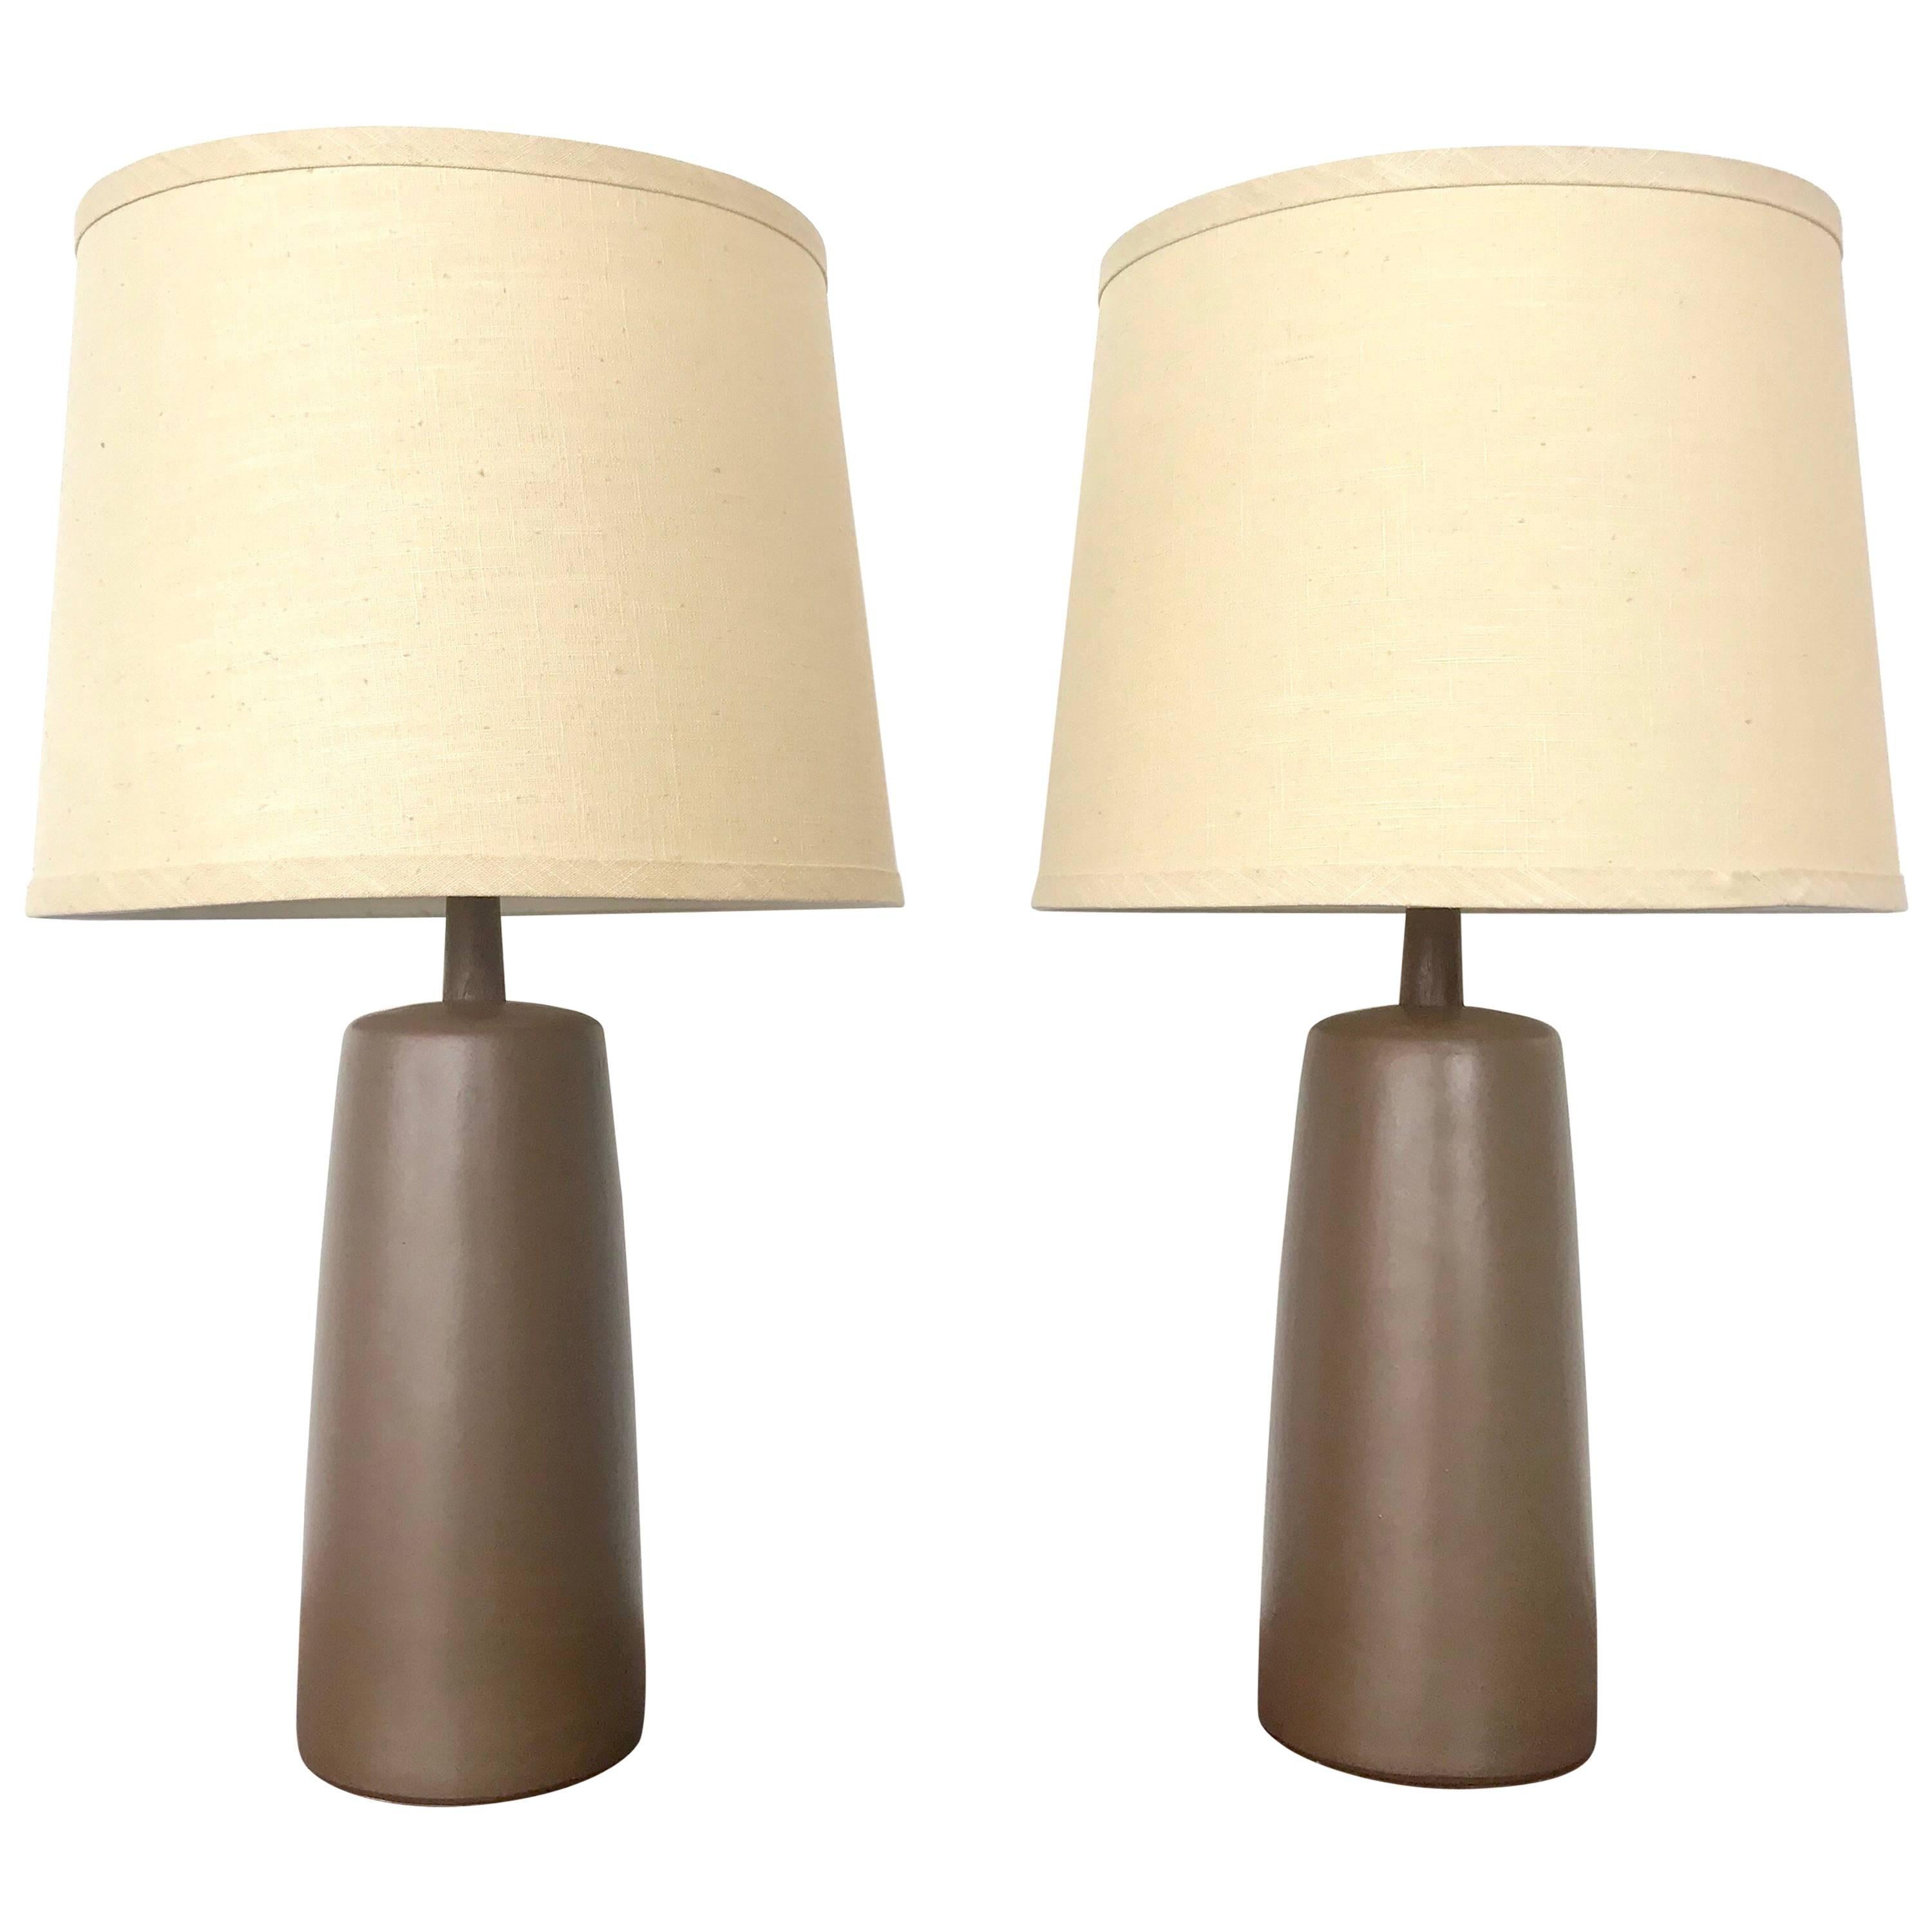 Pair of Ceramic Martz Lamps with Original Shade